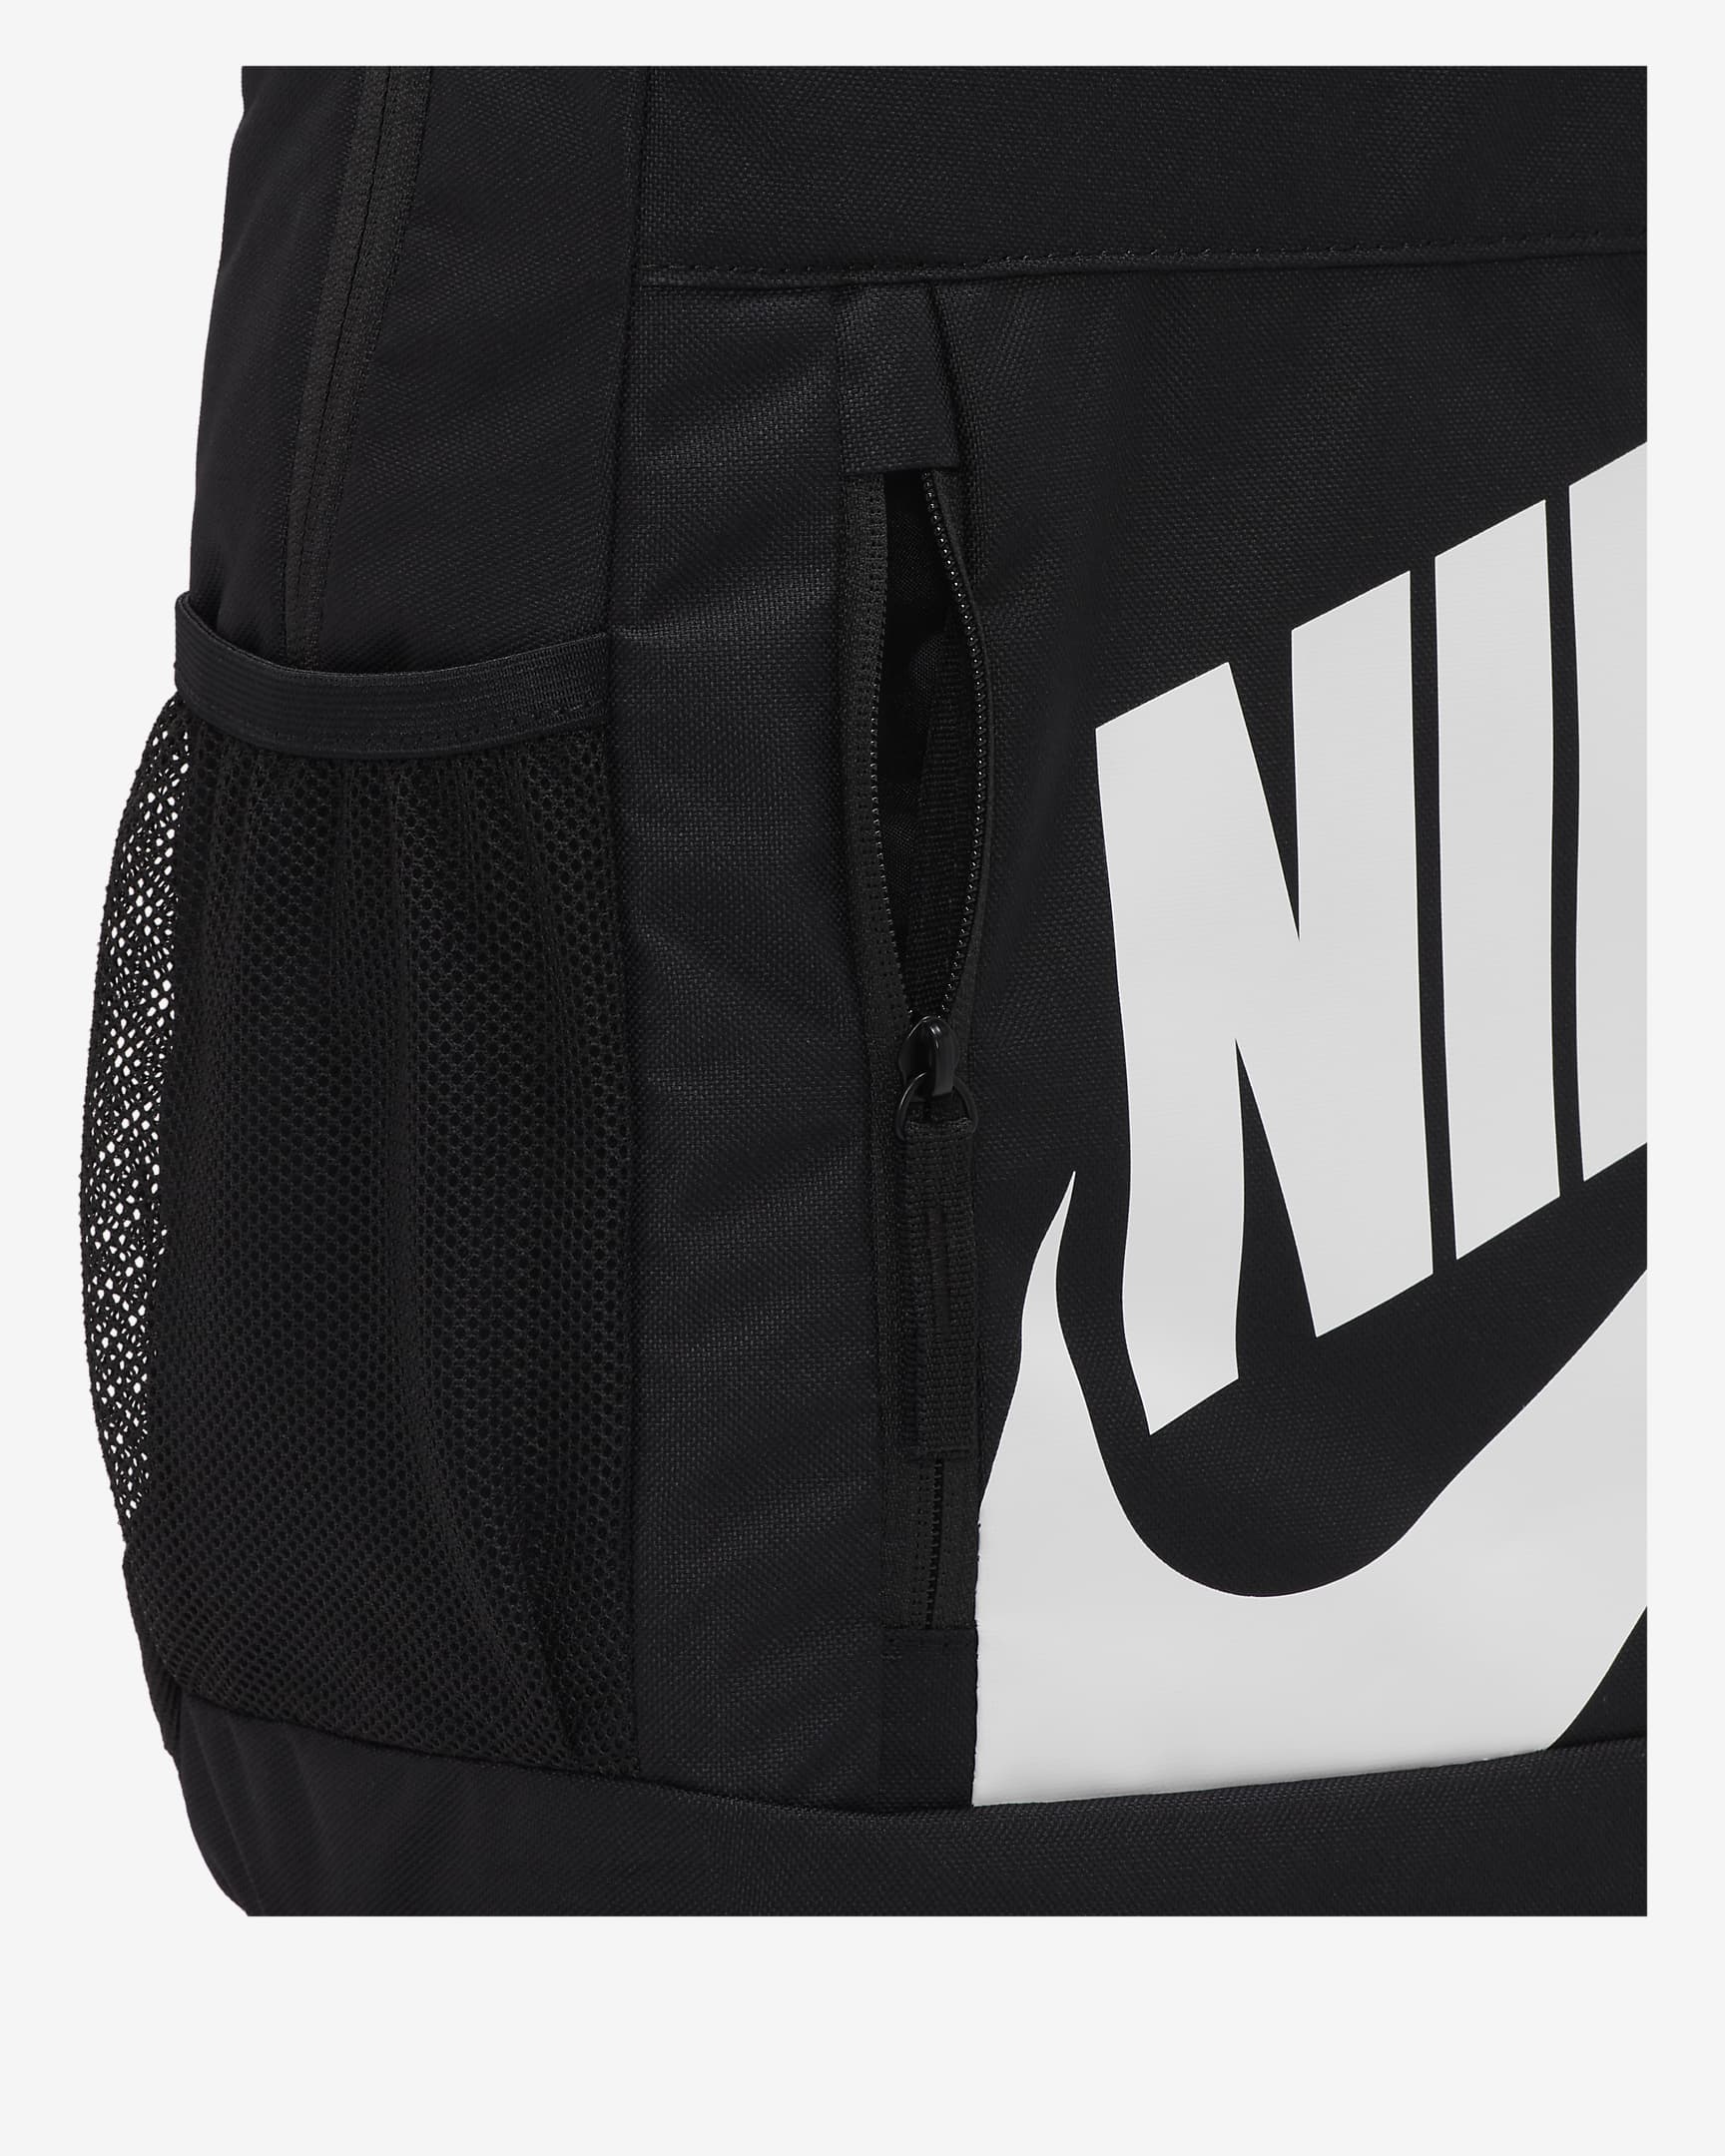 Ryggsäck Nike Elemental för barn (20 l) - Svart/Svart/Vit